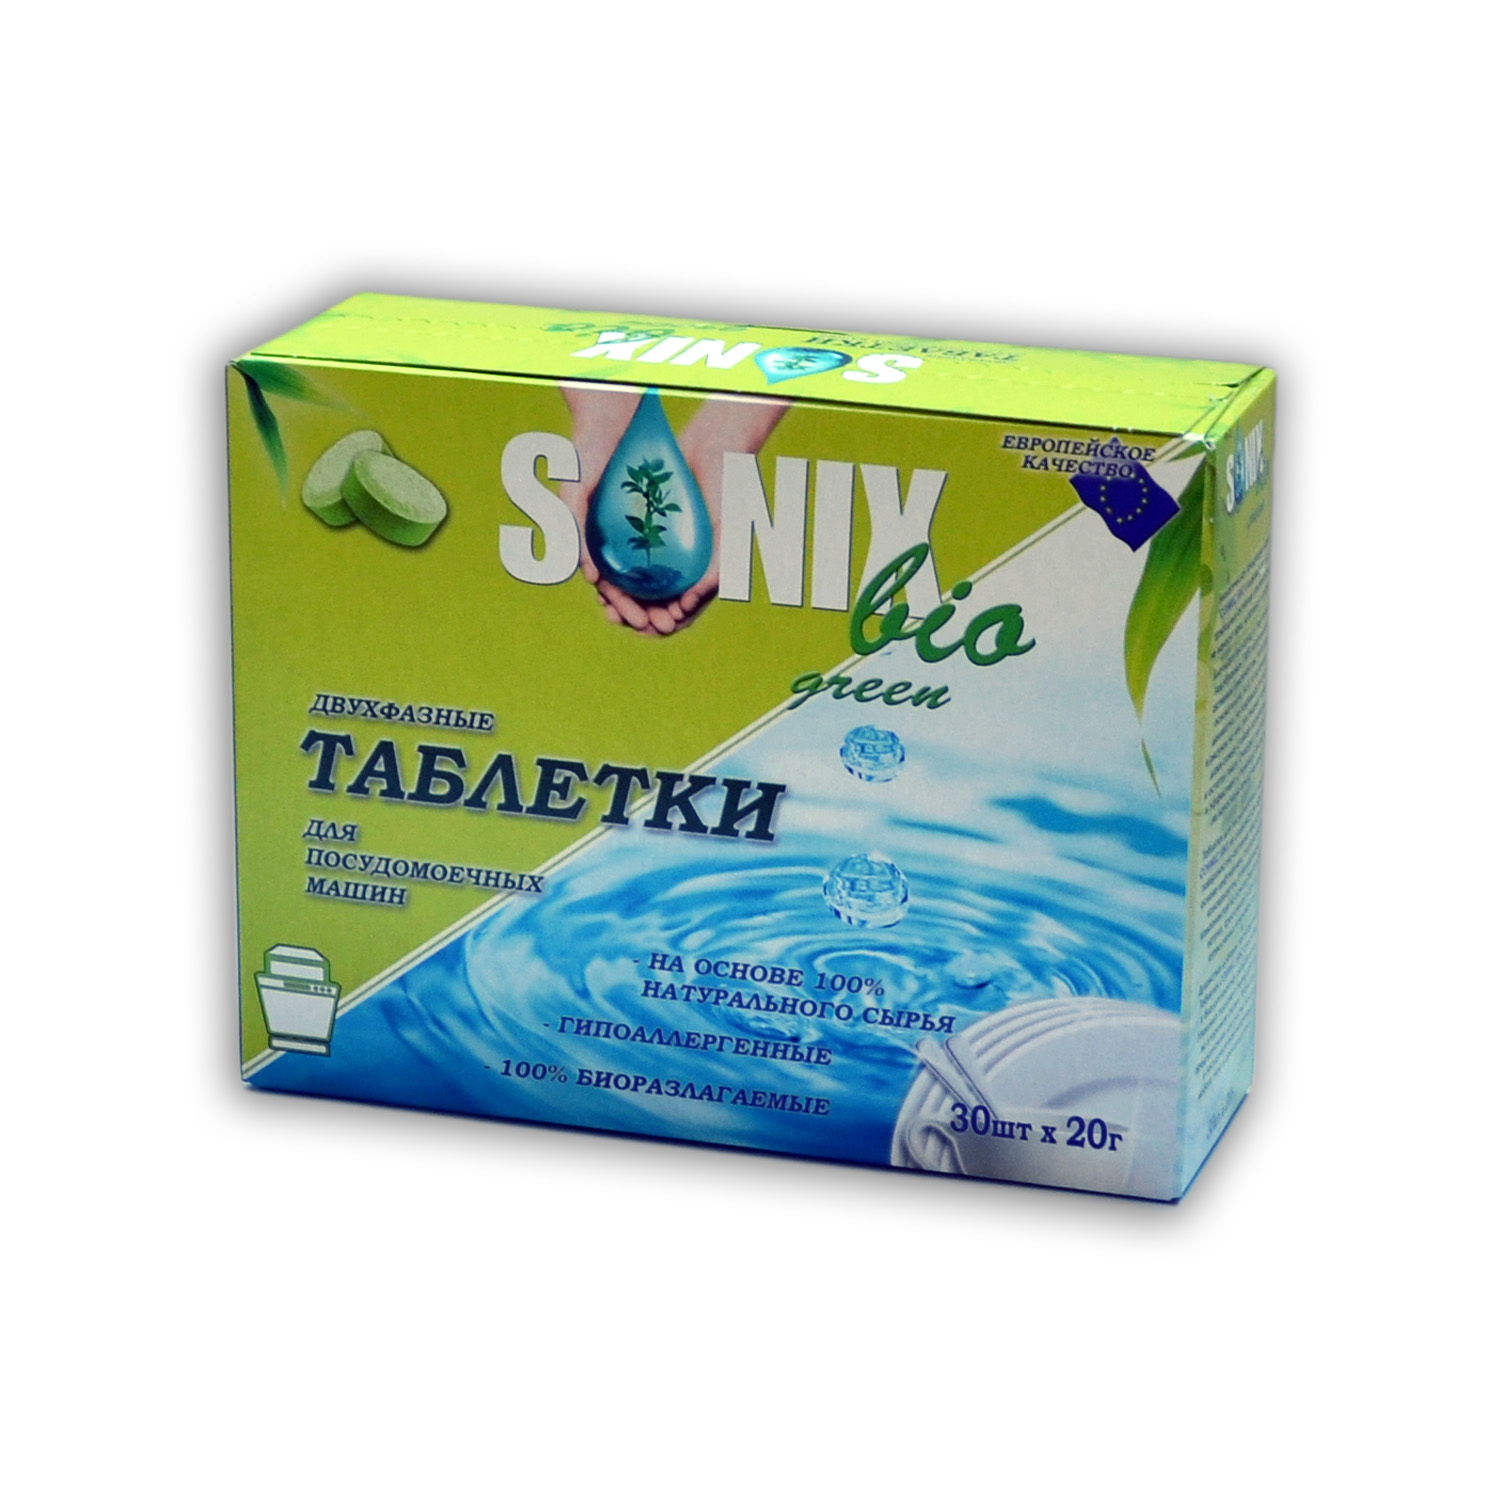 Sonix Bio Green Таблетки для ПММ "5 в 1", биоразлогаемые купить оптом